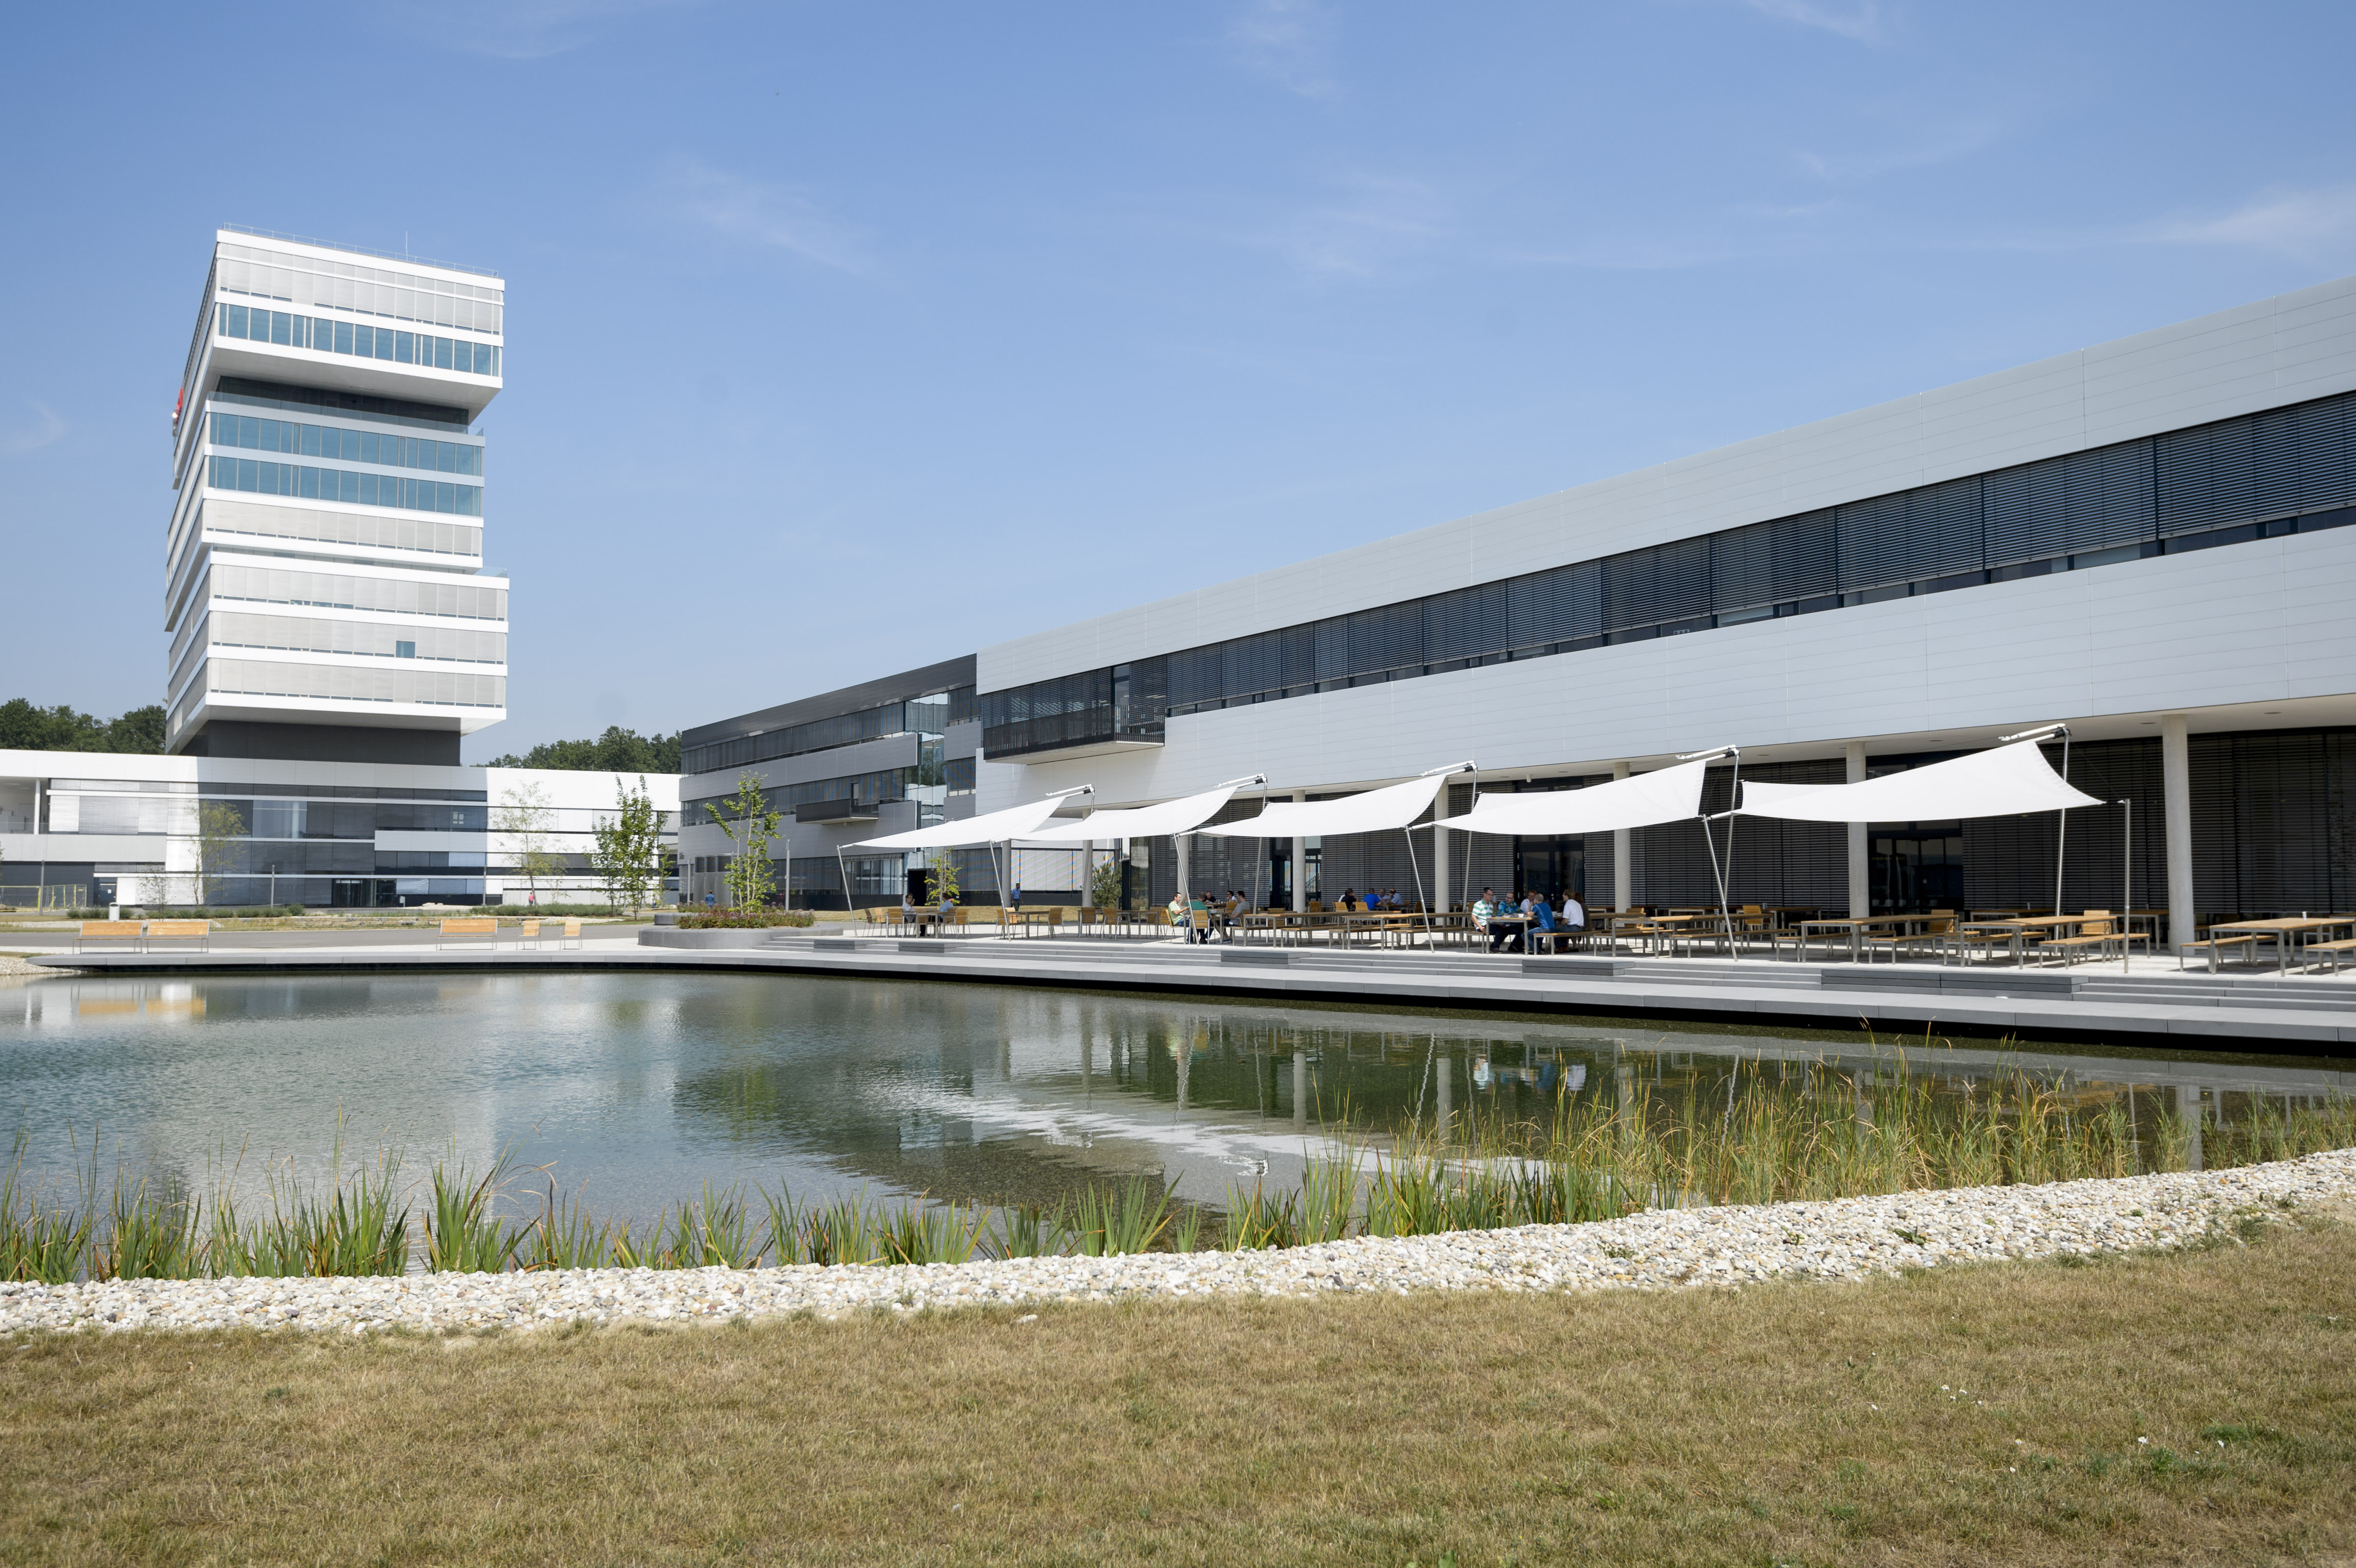 Centro di tecnologia e innovazione - Bosch inaugura ufficialmente il nuovo campus di ricerca a Renningen